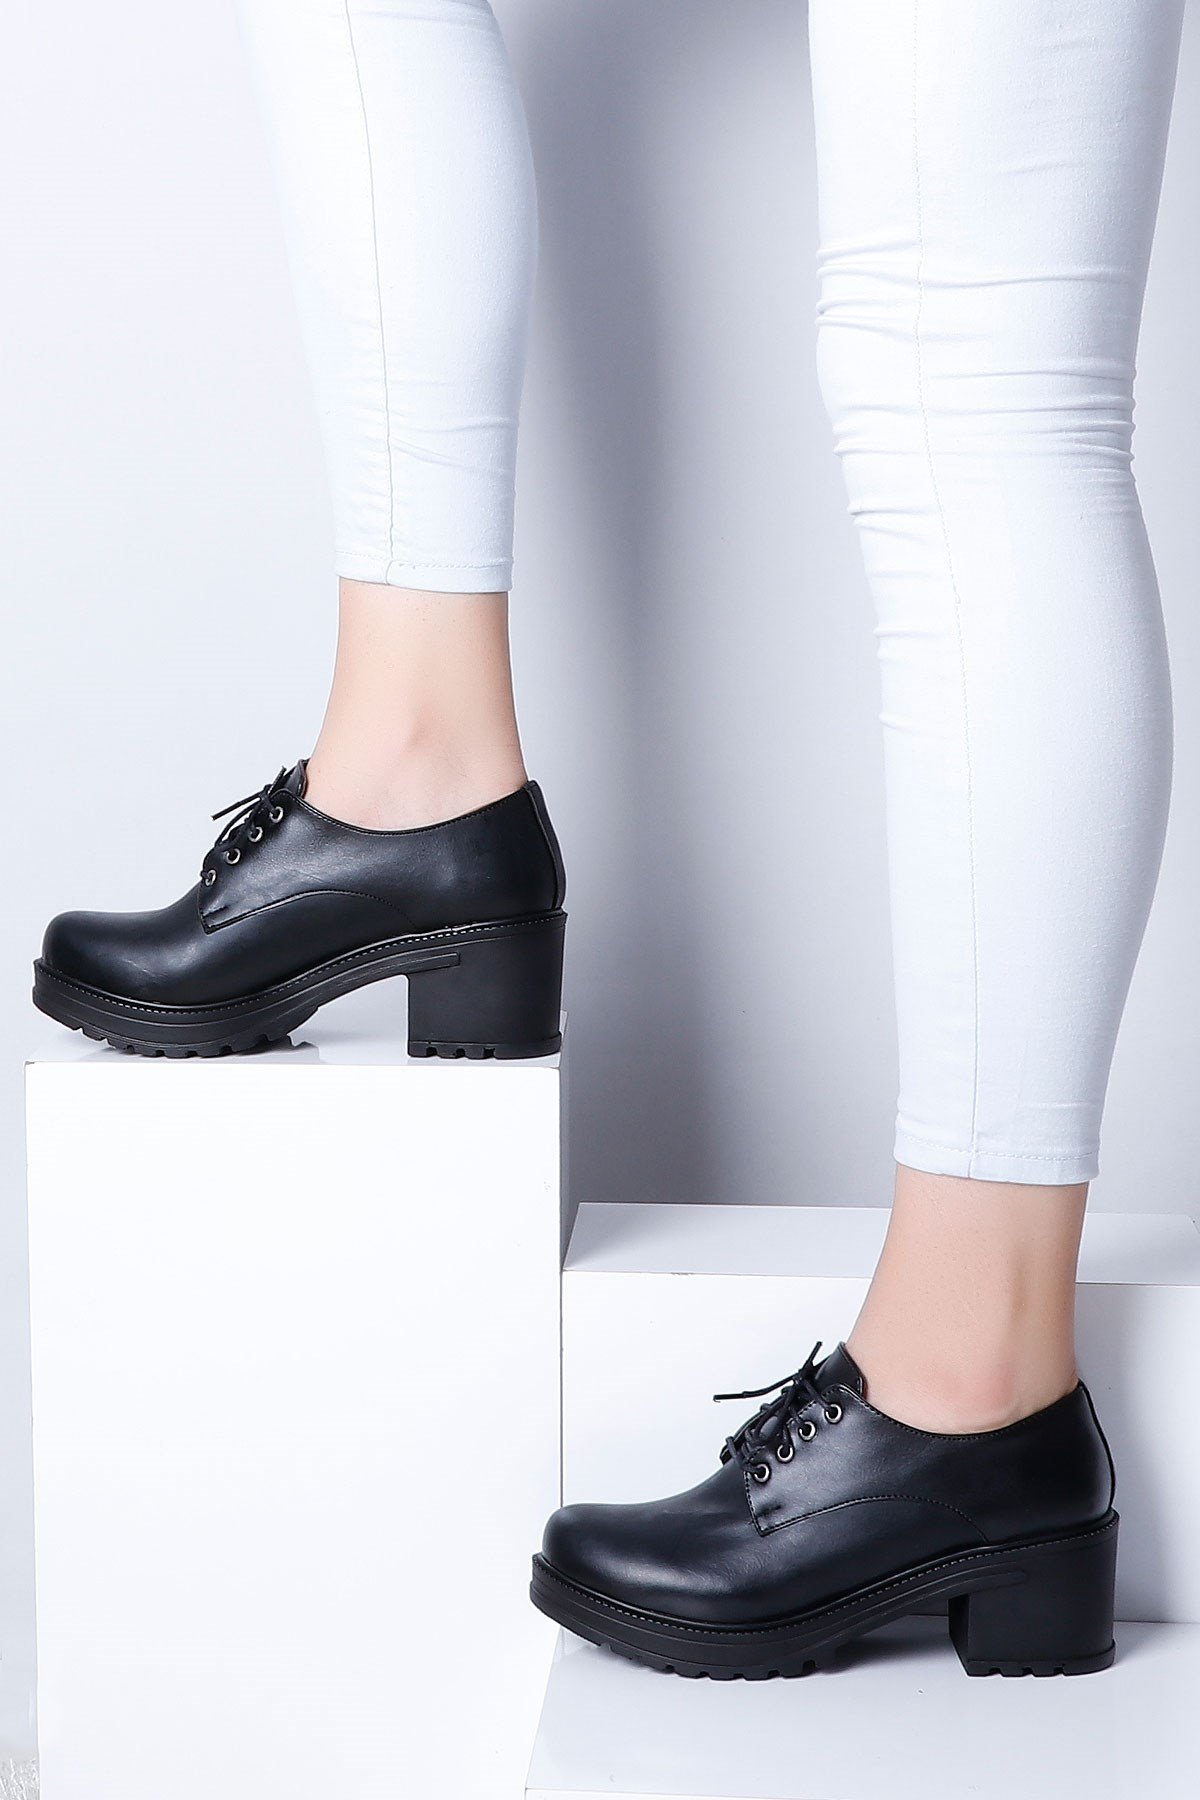 Siyah Kalın Topuklu Kadın Ayakkabı 01 Fiyatı ve Modelleri